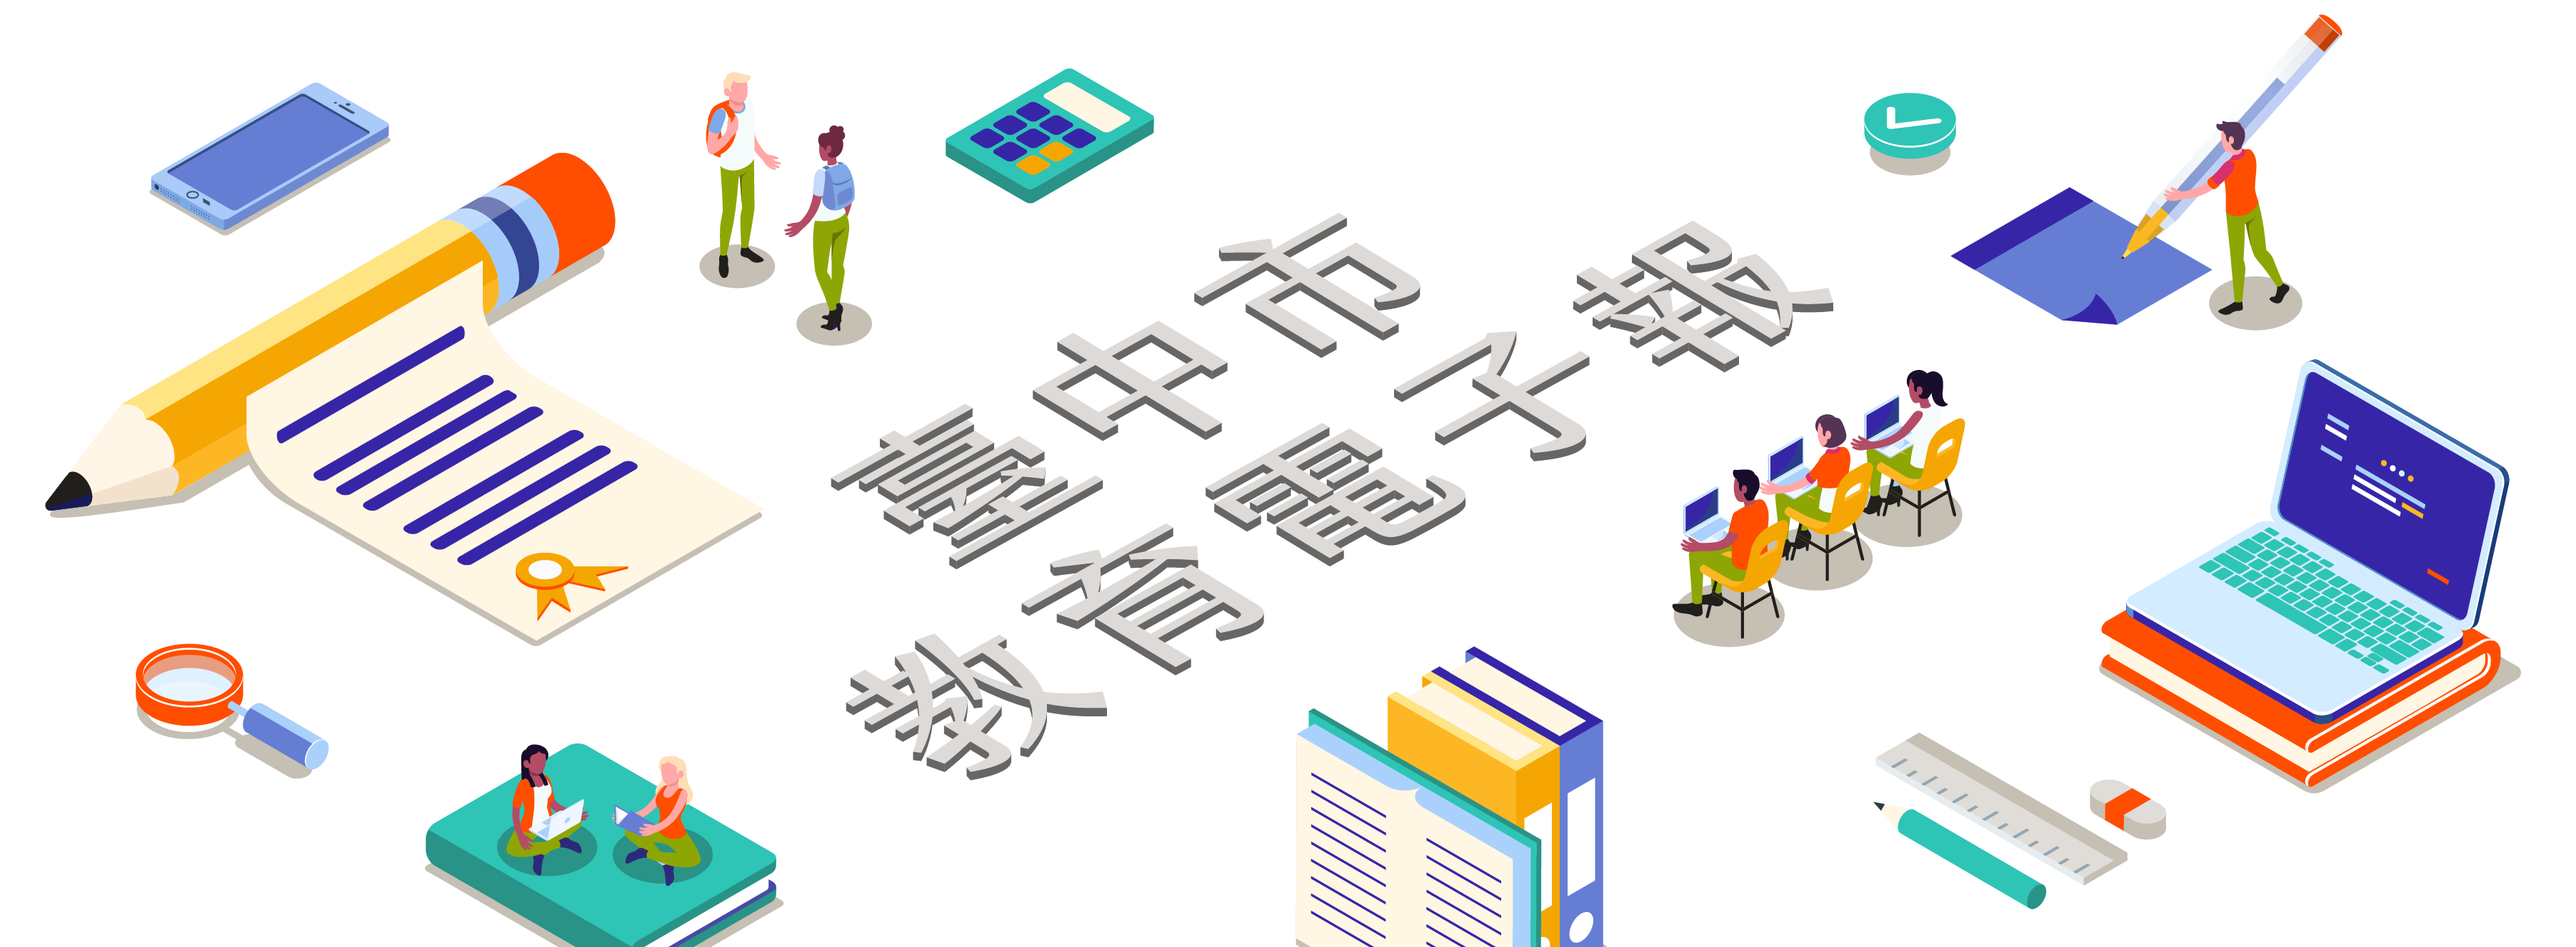 臺中市教育電子報系統形象圖